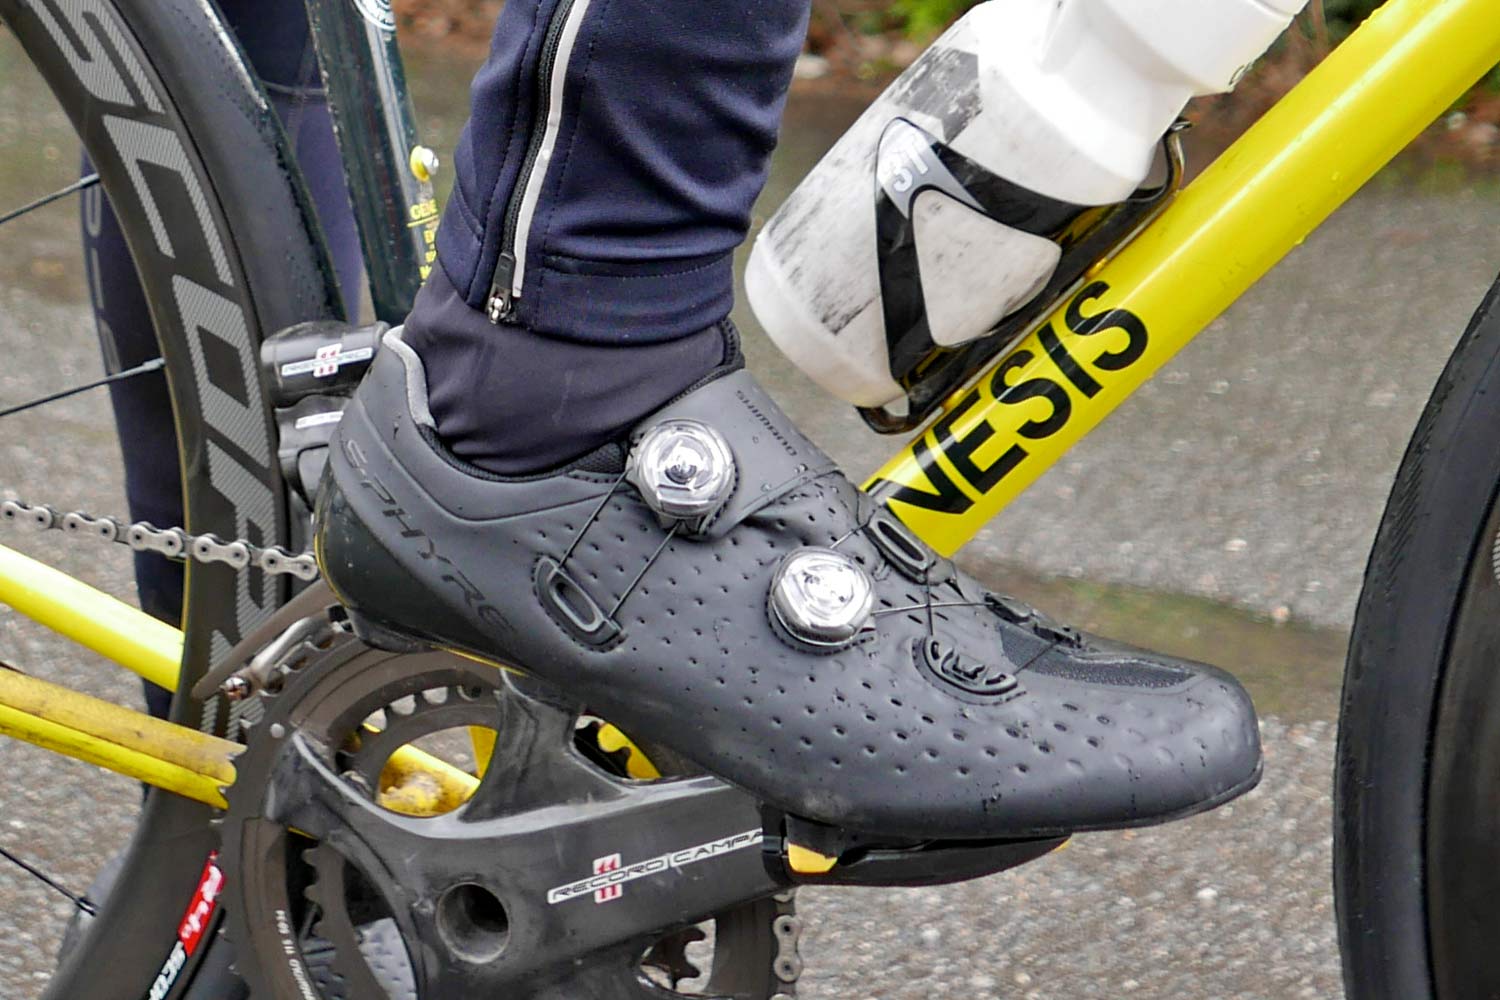 Gevoelig Bezienswaardigheden bekijken rib Review: Shimano Dura-Ace R9100 pedals lock down our road shoes - Bikerumor